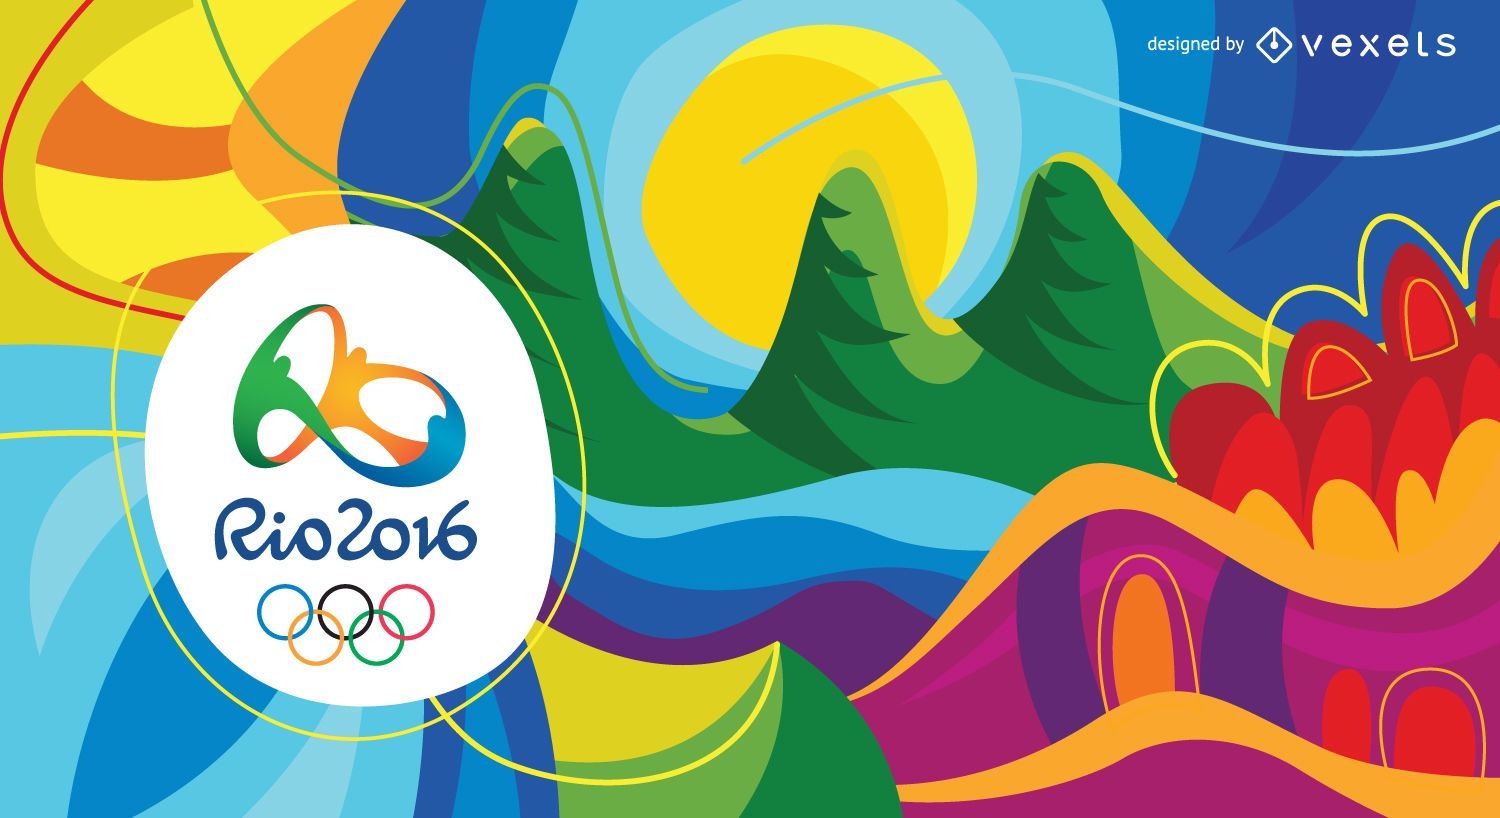 Fondo abstracto colorido de los Juegos Ol?mpicos Rio 2016